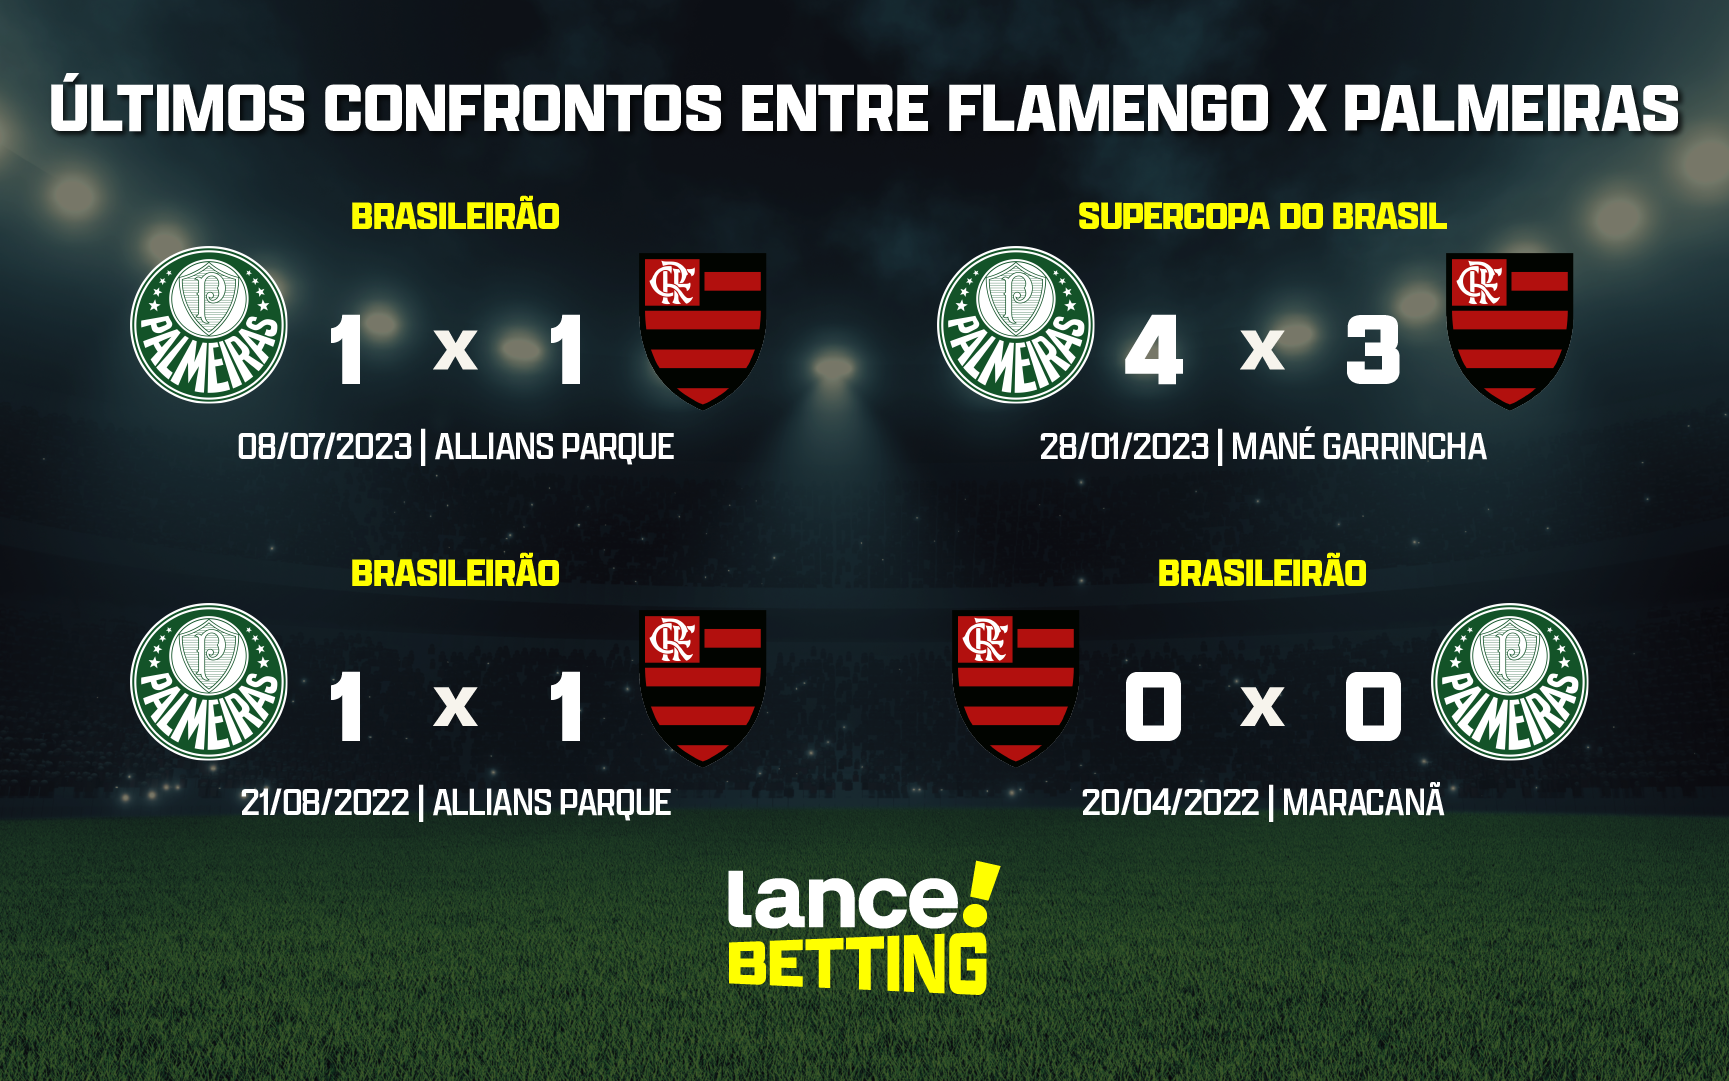 Palmeiras agora  Principais informações do jogo contra o Flamengo